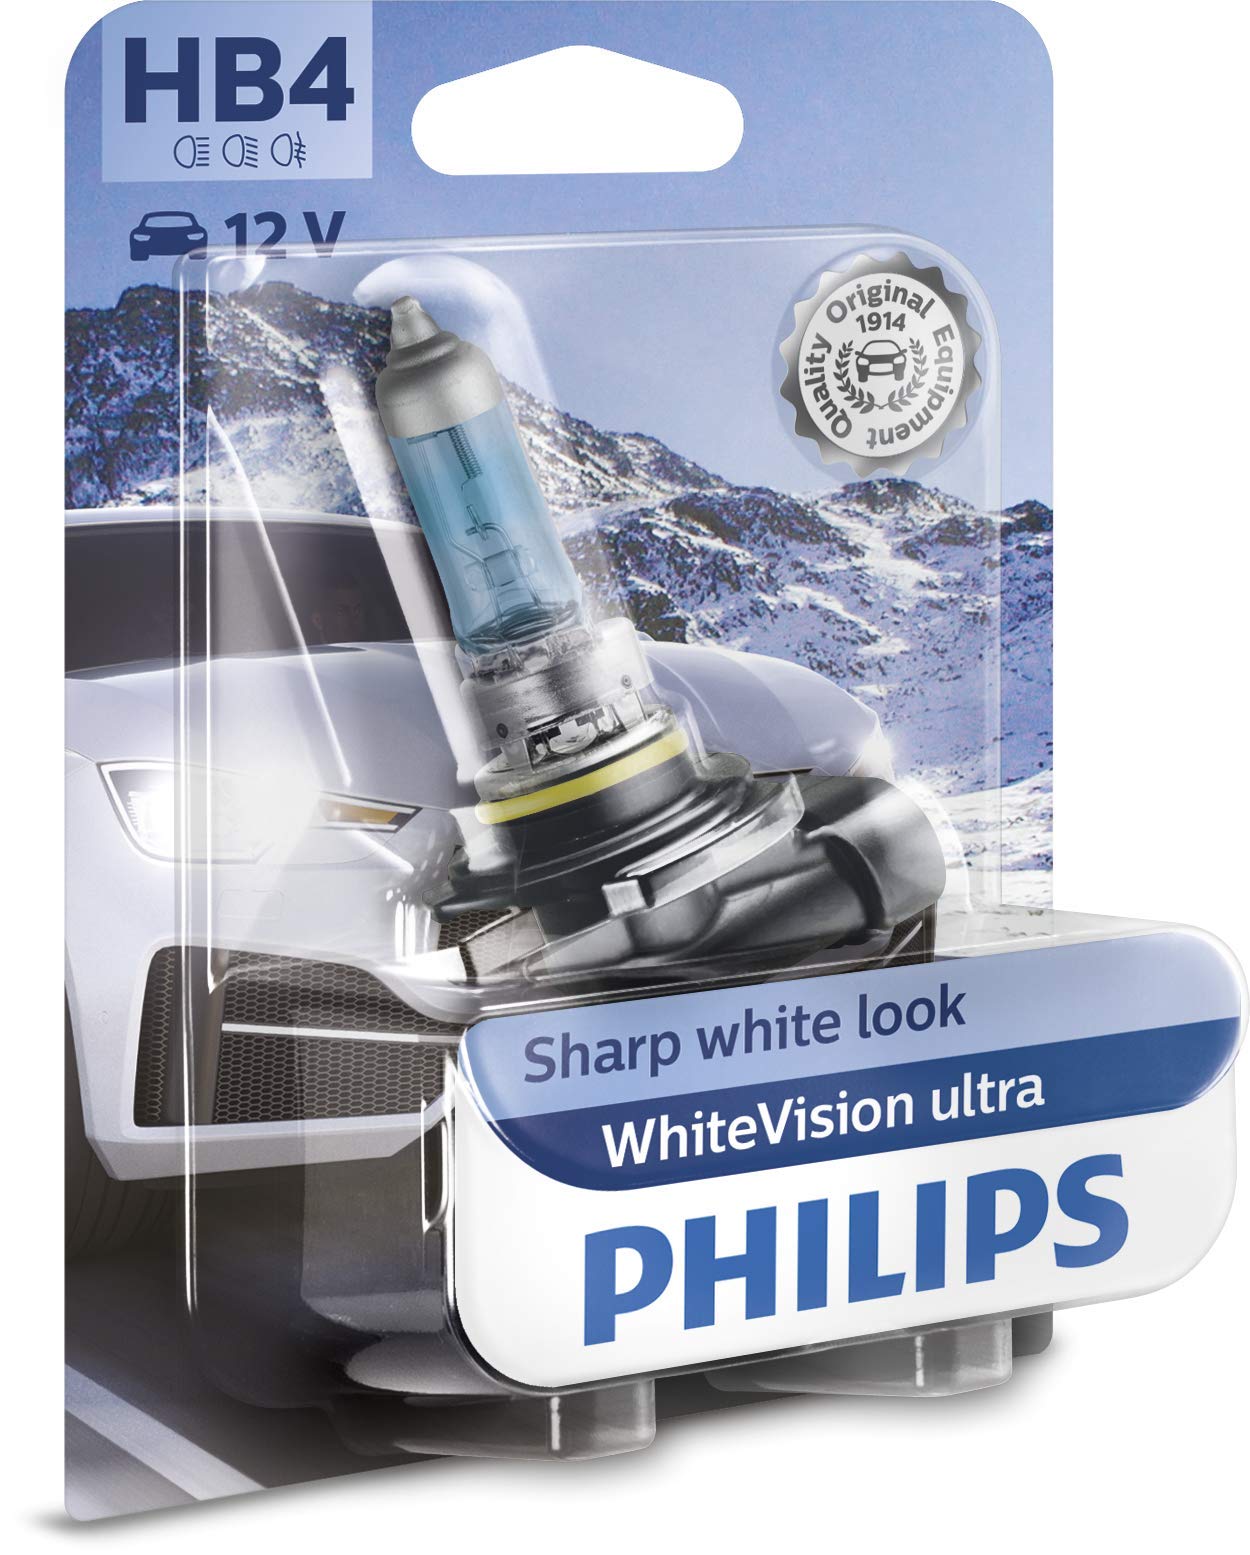 Philips WhiteVision ultra HB4 Scheinwerferlampe, Einzelblister, 539728, Single blister von Philips automotive lighting